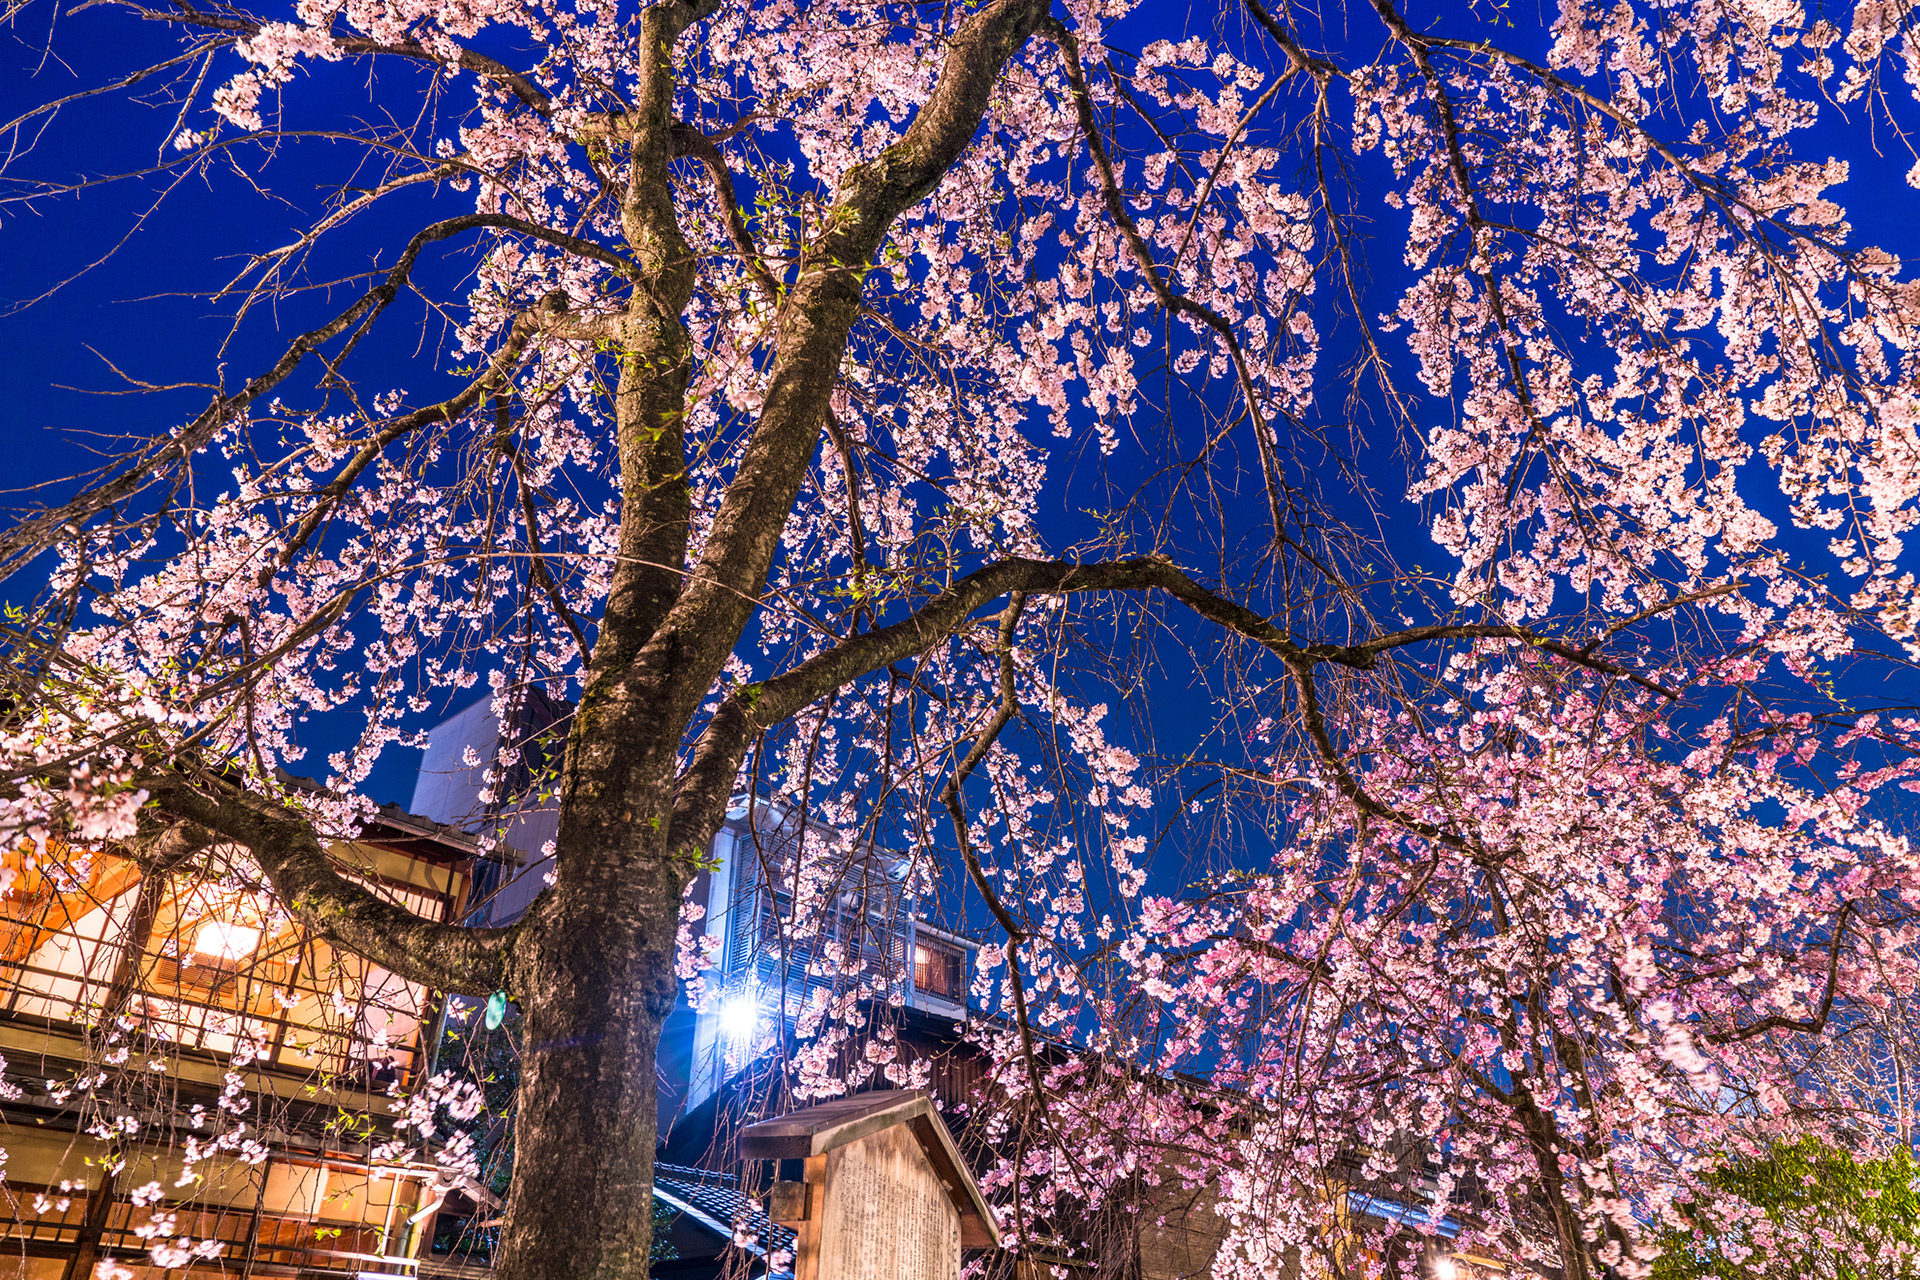 京都-桜-ライトアップ